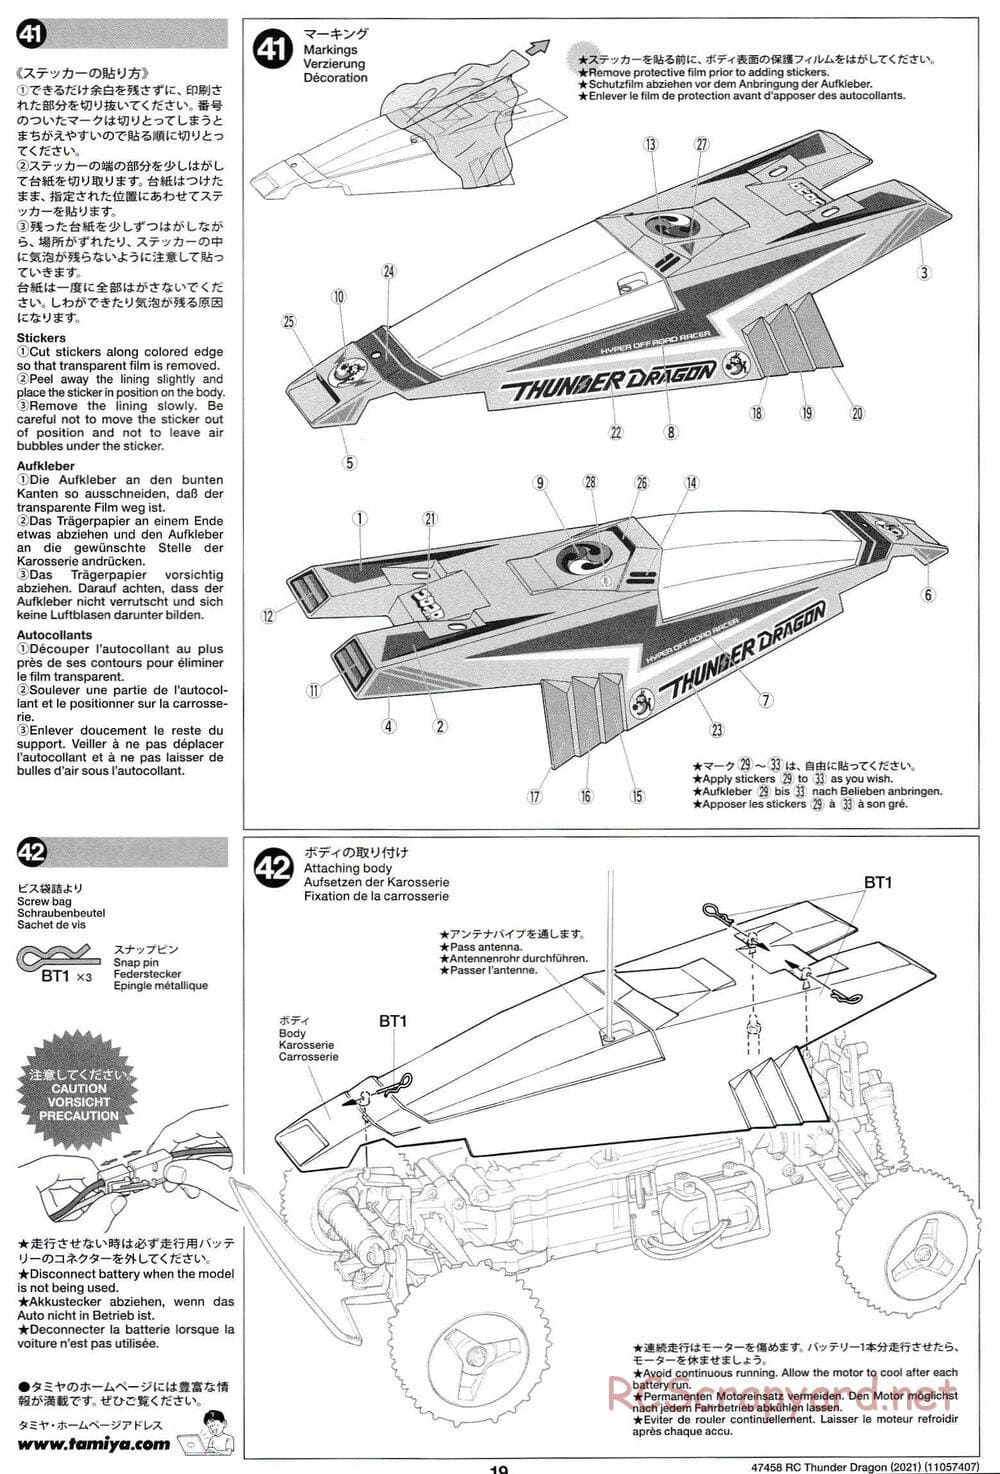 Tamiya - Thunder Dragon (2021) Chassis - Manual - Page 19